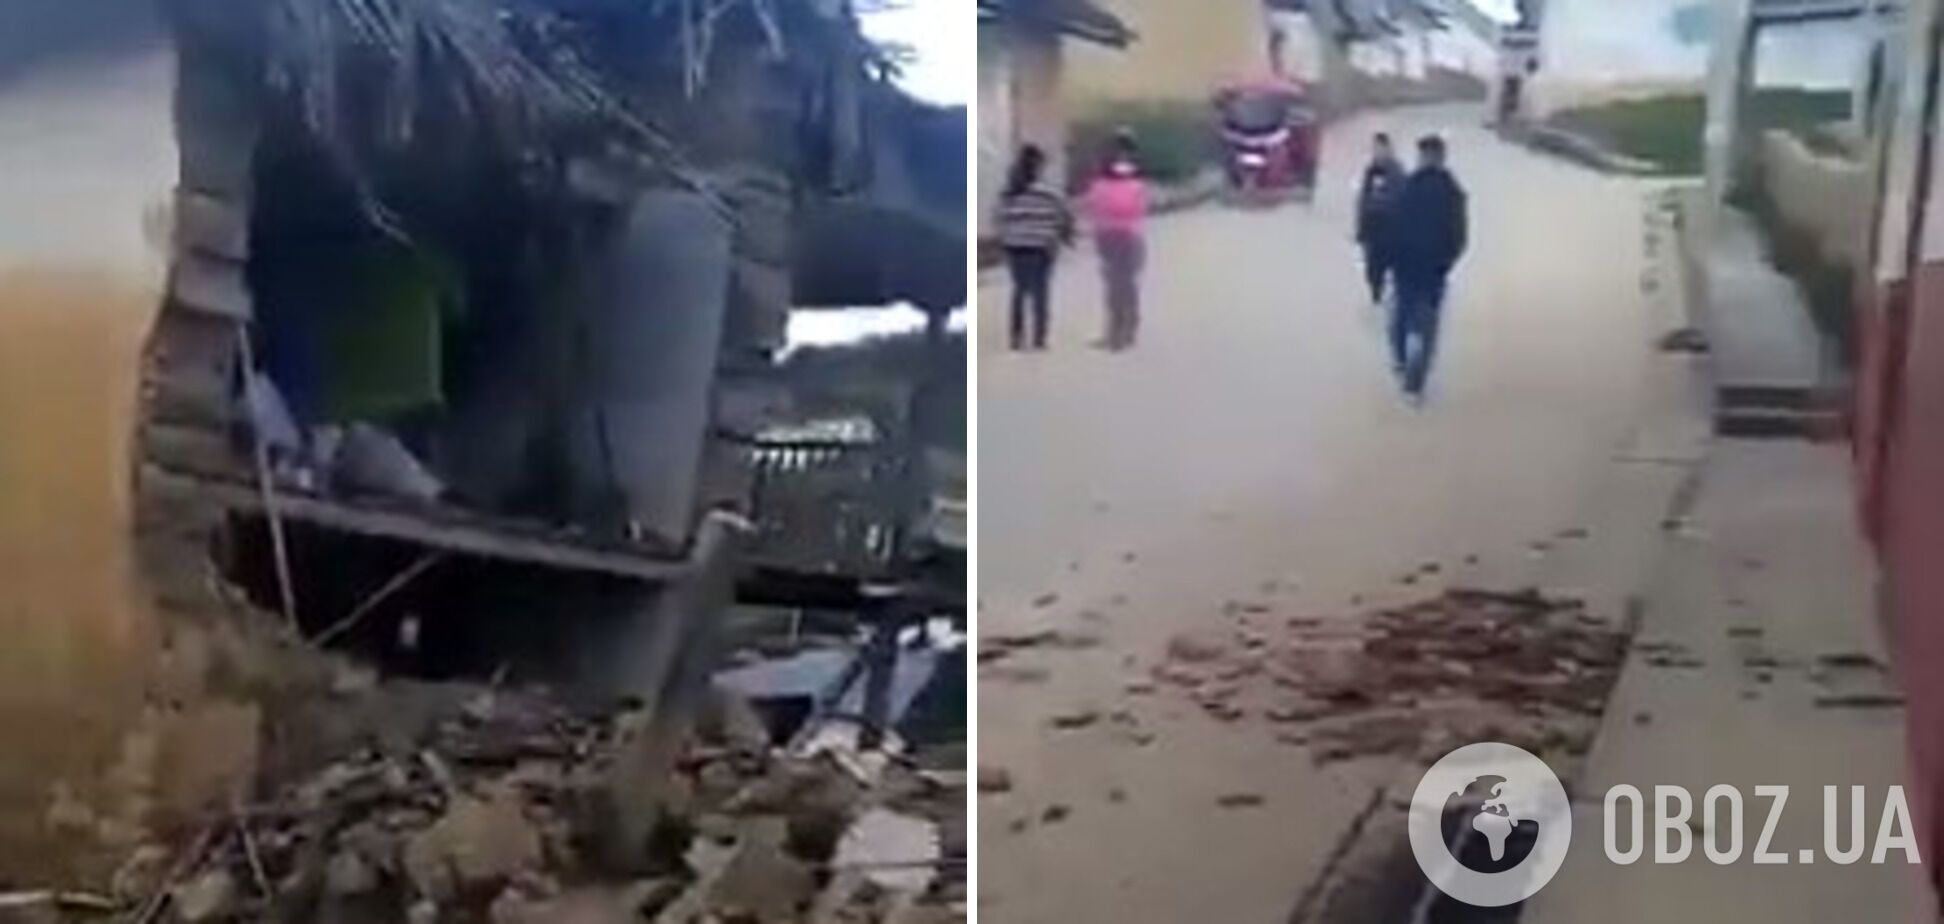 В Перу произошло мощное землетрясение, повреждено историческое здание. Фото и видео